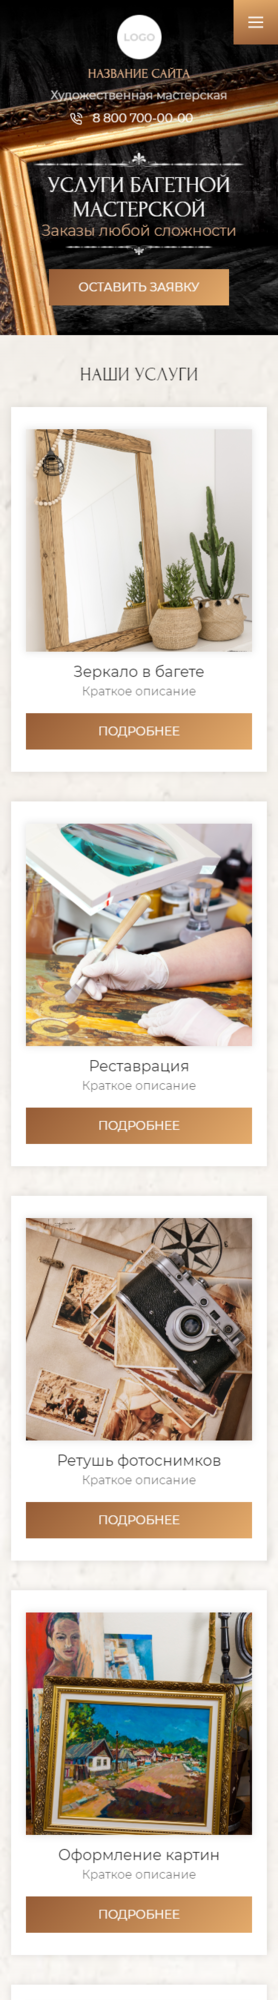 Готовый Сайт-Бизнес № 3547154 - Сайт для багетных мастерских (Мобильная версия)